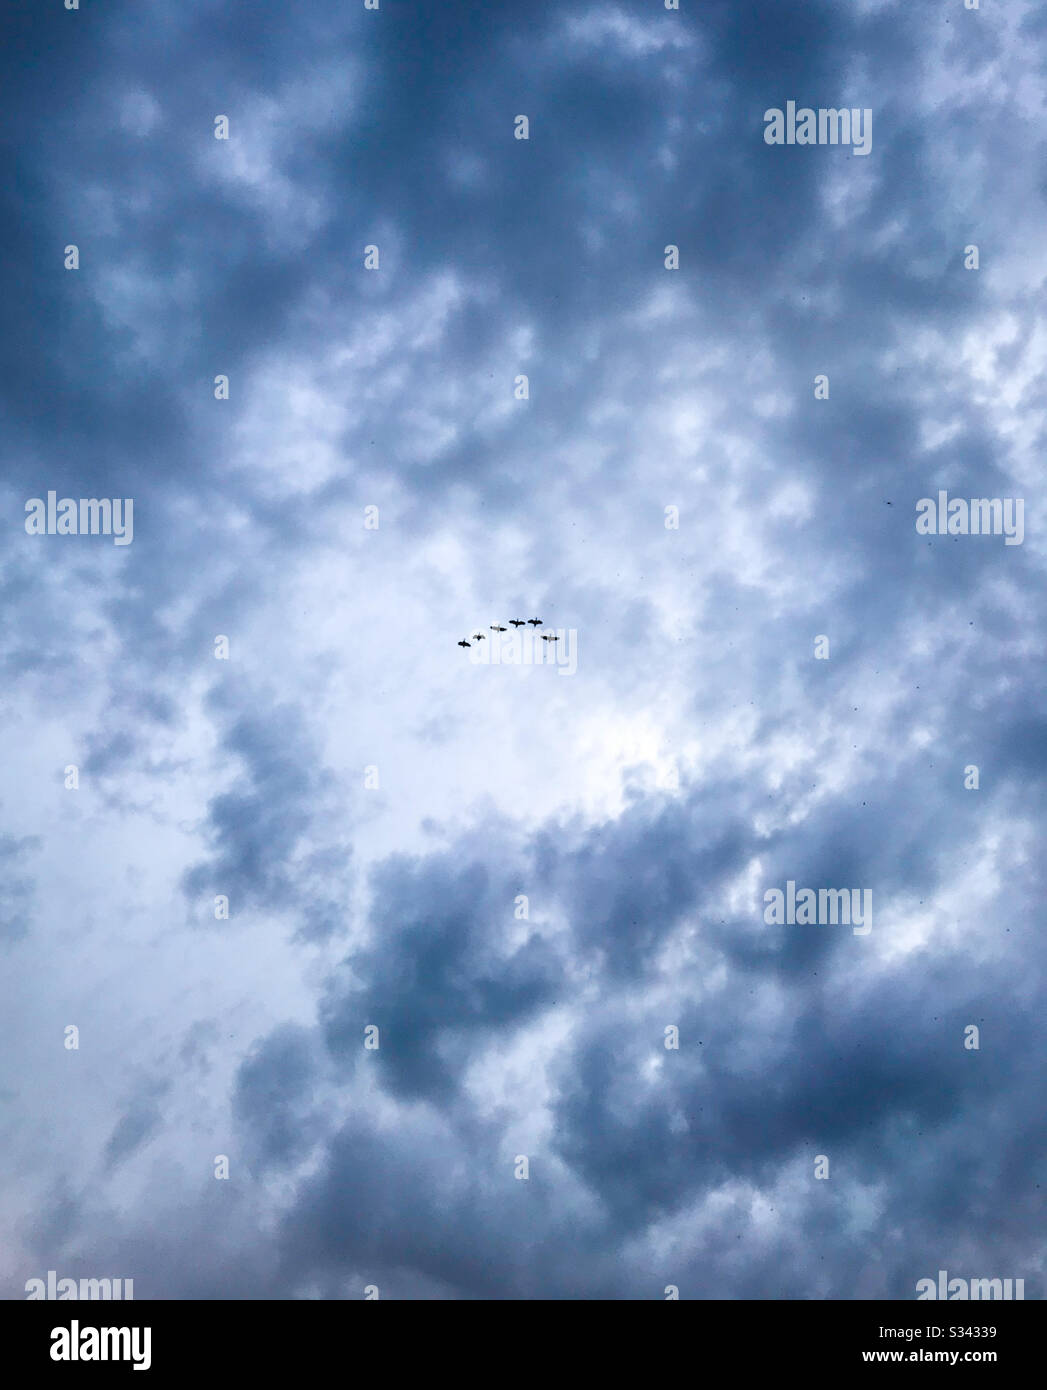 Pájaros en formación. Las nubes de lluvia los enmarcan. Stock Photo